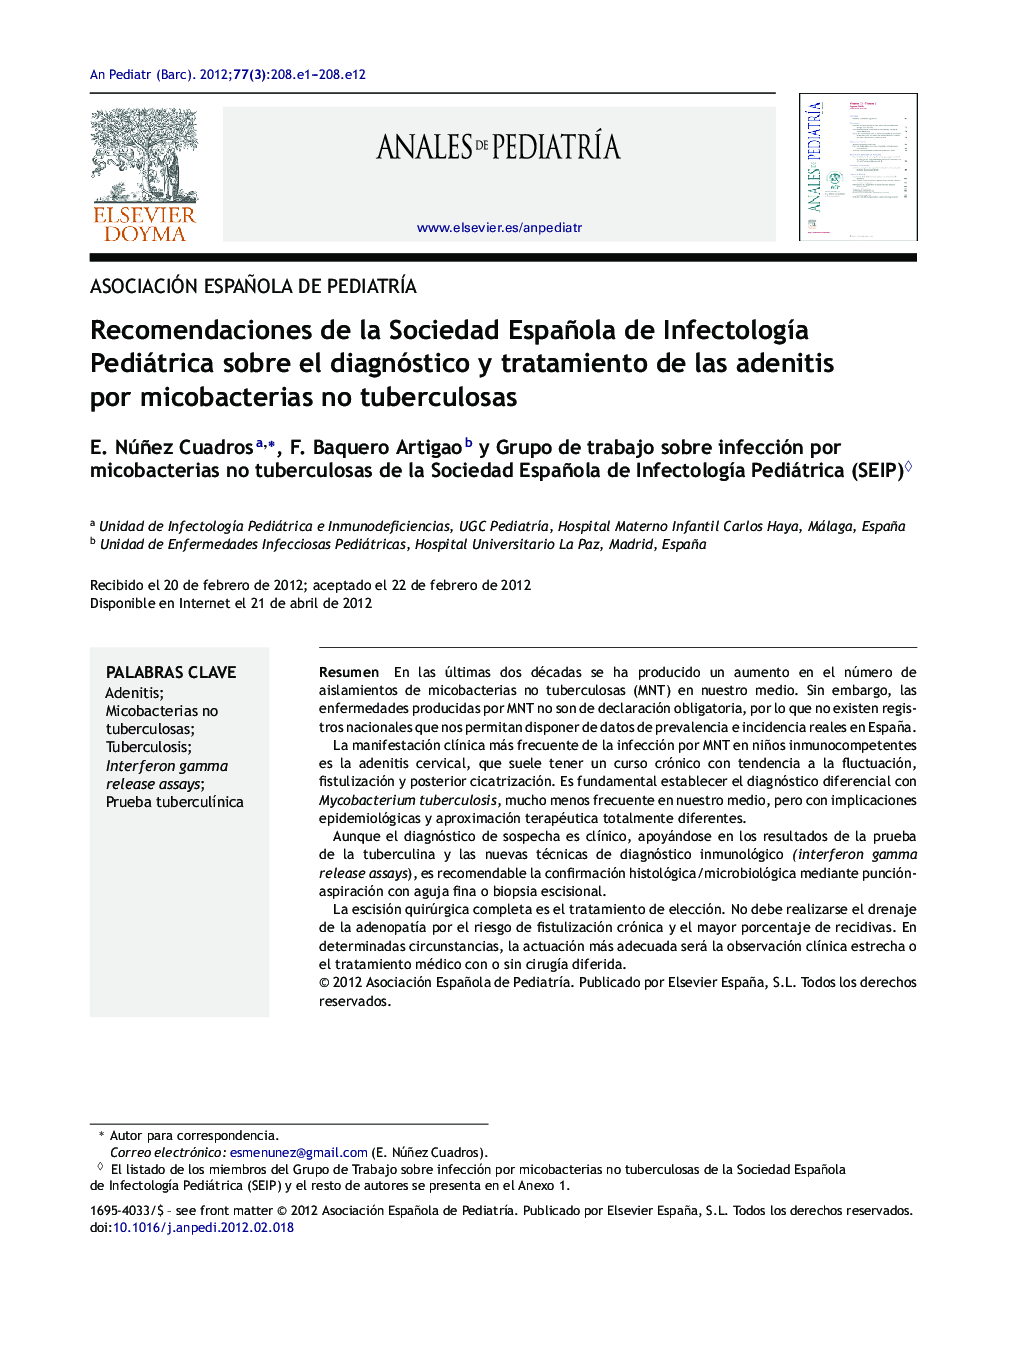 Recomendaciones de la Sociedad Española de InfectologÃ­a Pediátrica sobre el diagnóstico y tratamiento de las adenitis por micobacterias no tuberculosas